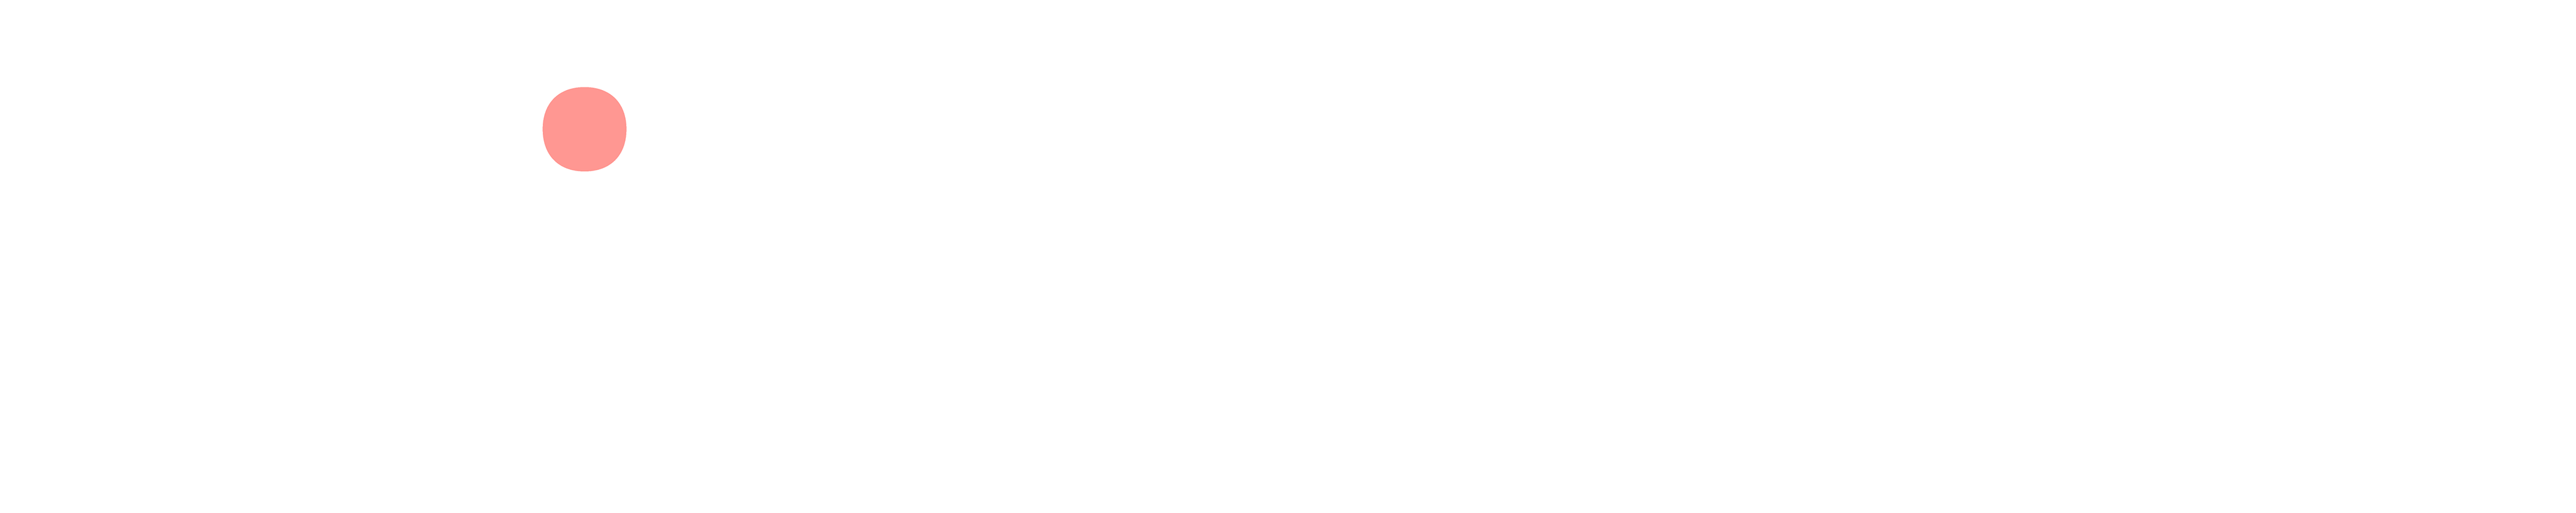 Bailey Walker logo